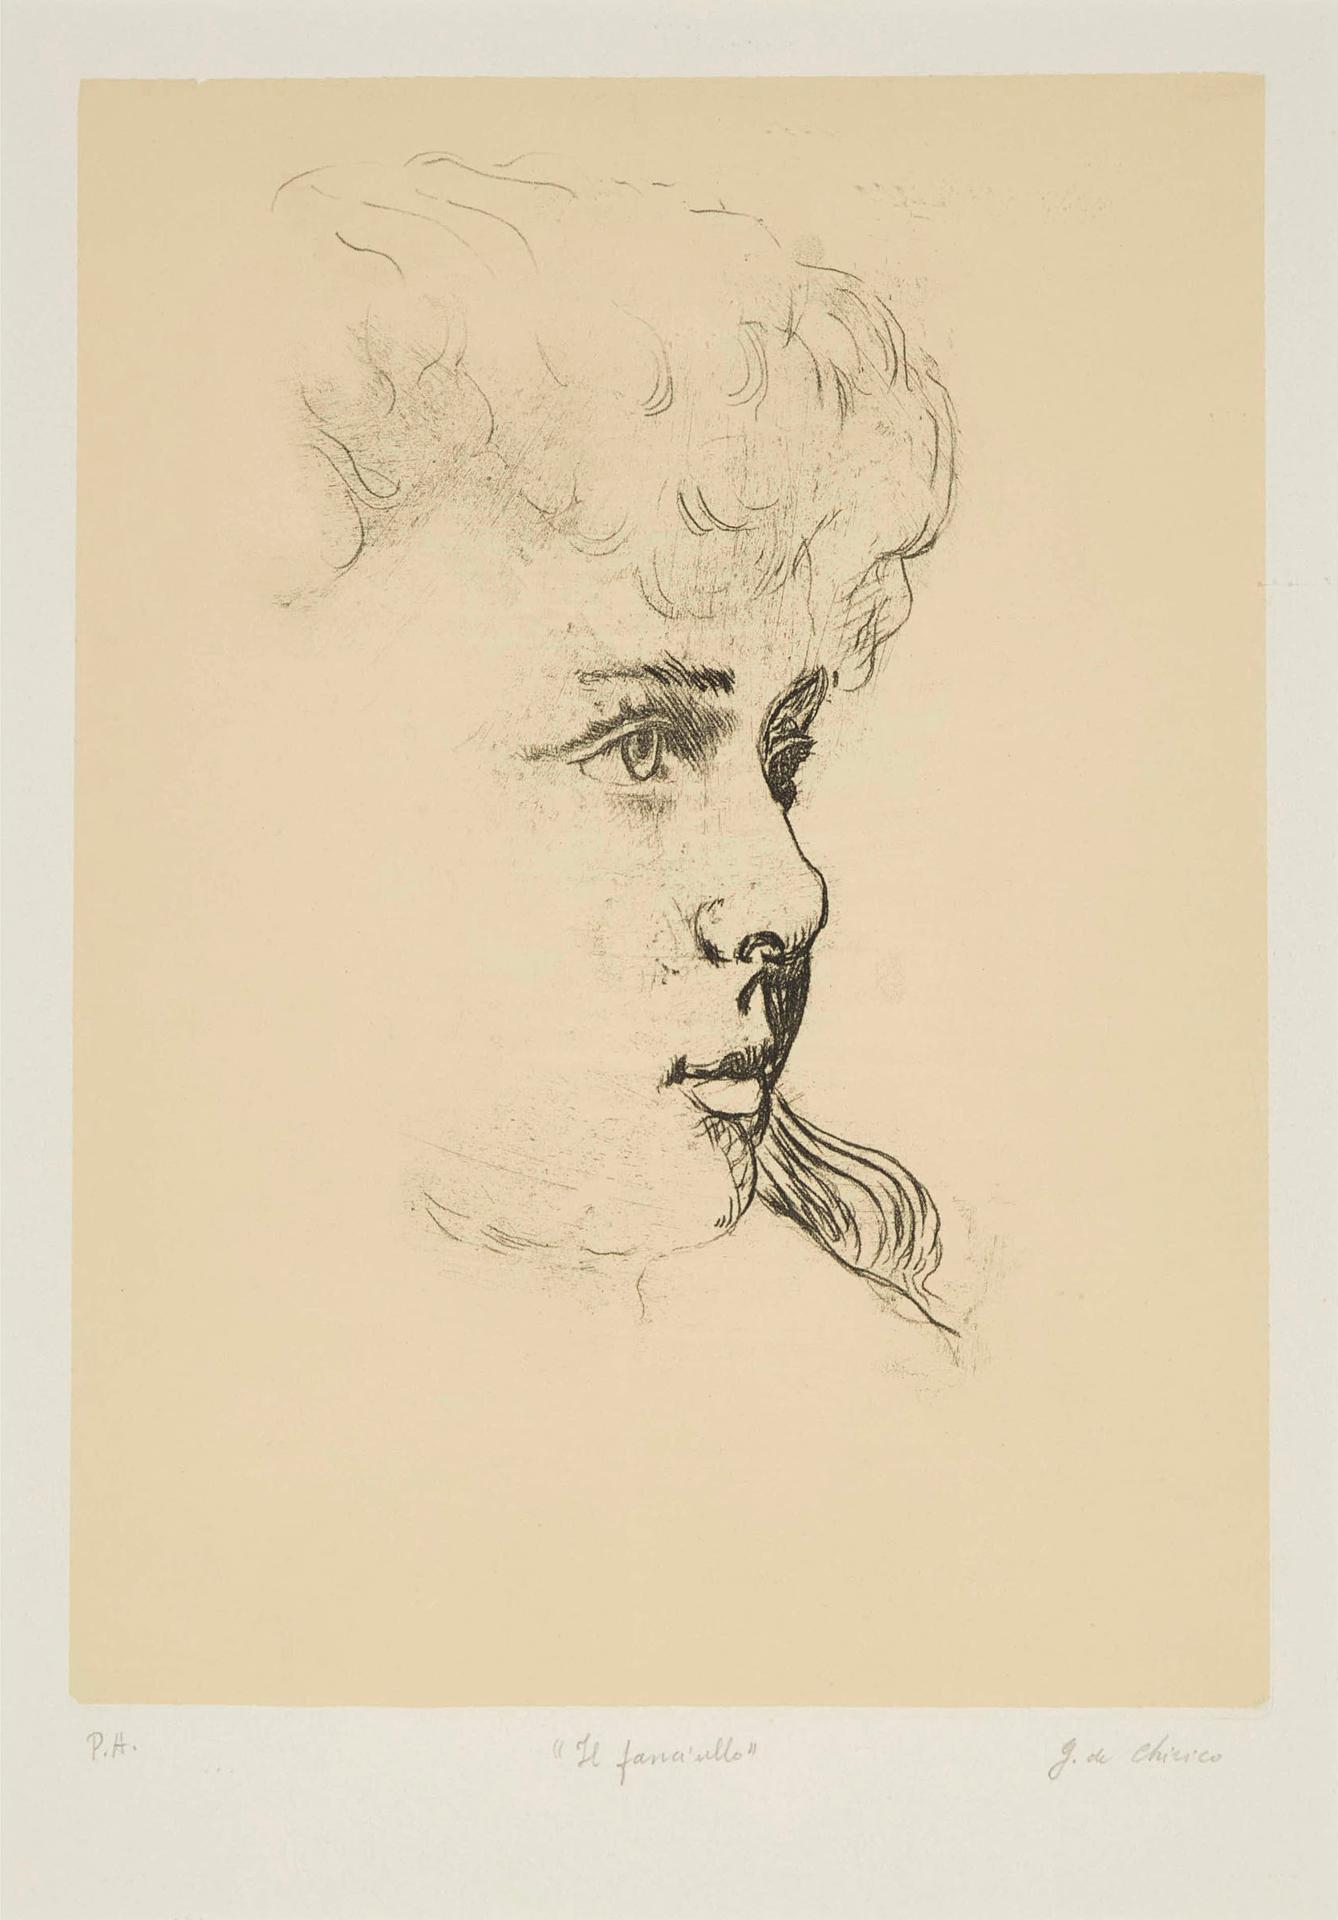 Giorgio de Chirico (1888-1978) - Il Fanciullo, The Young Boy, 1971 [b. 15]